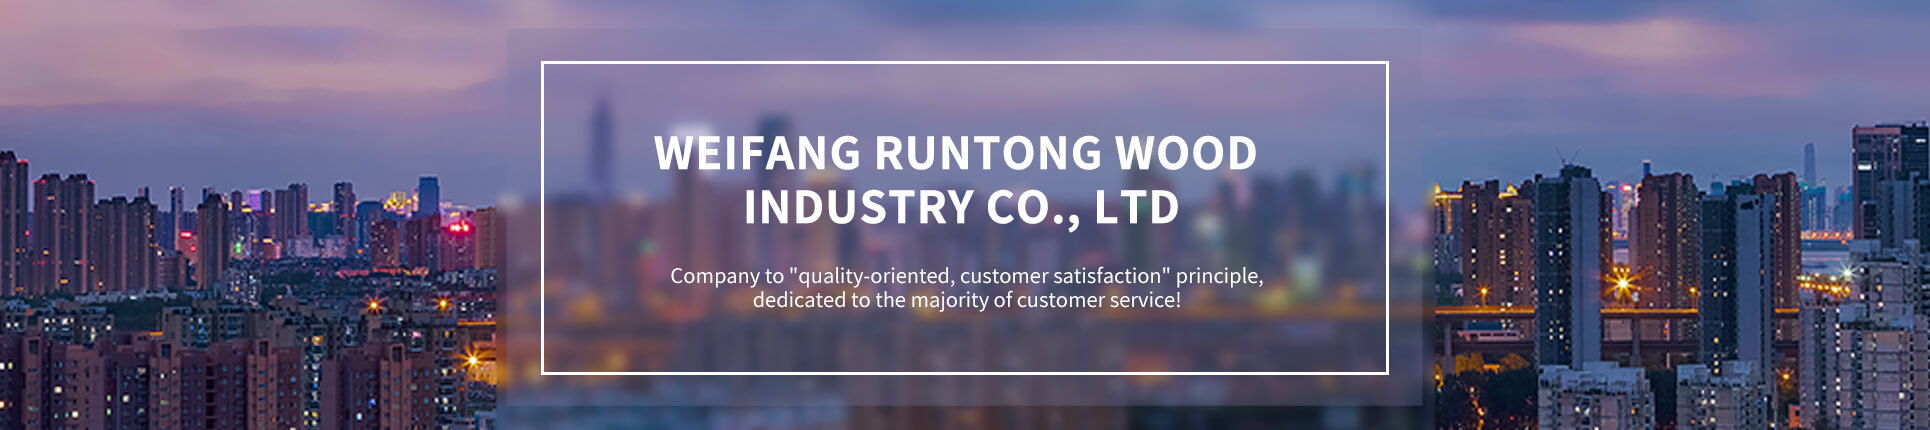 Weifang Runtong Wood Industry Co. LTD